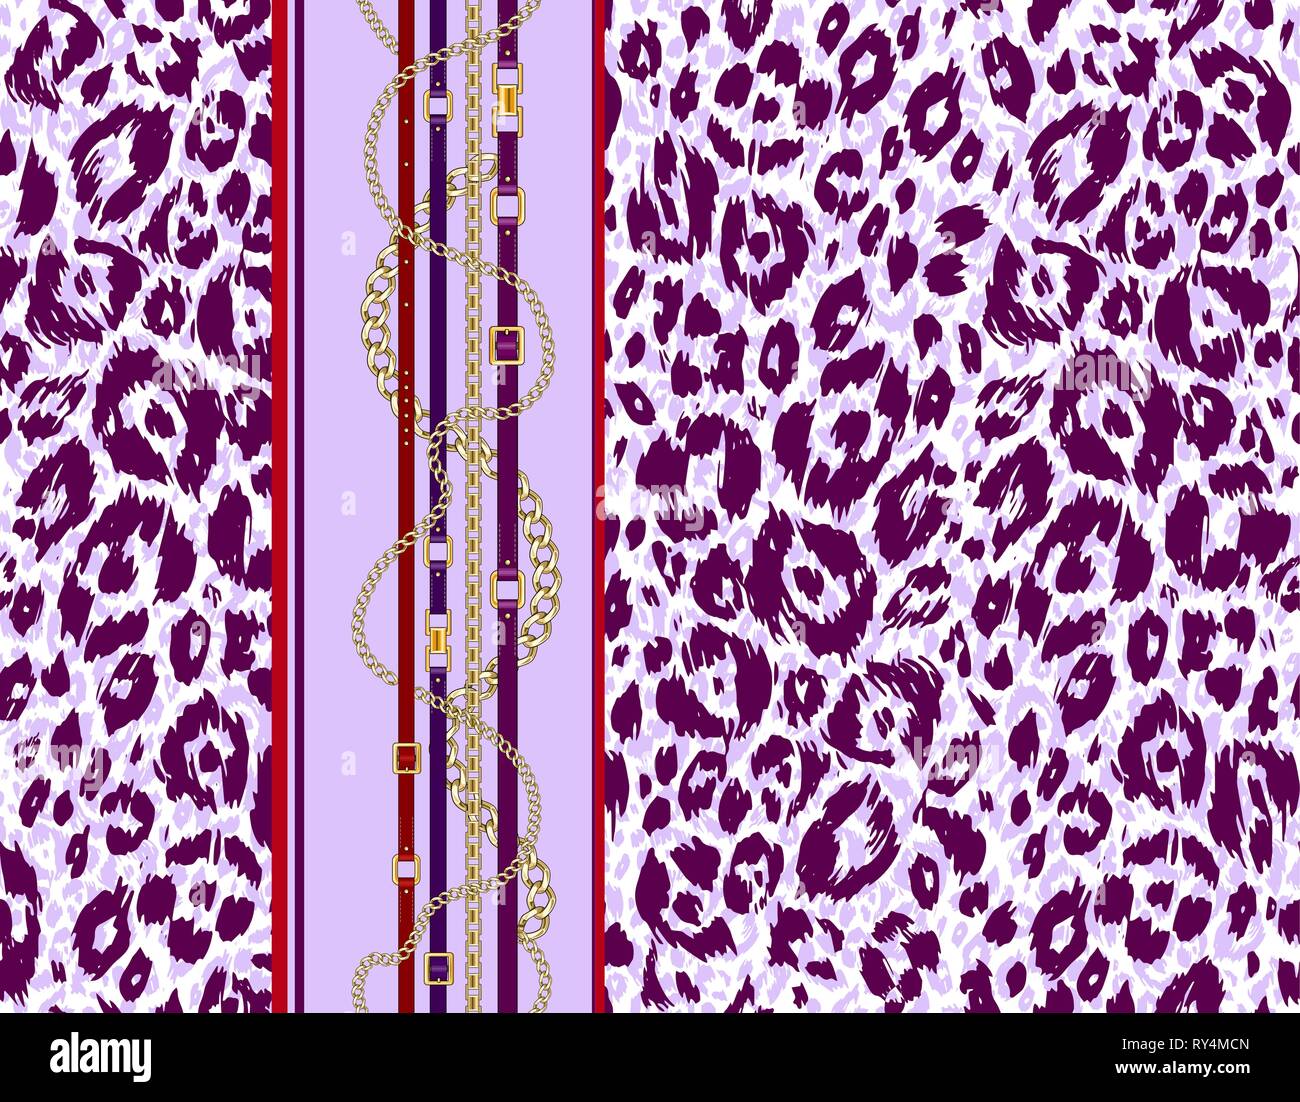 Abctract nahtlose Muster mit Riemen, Kette auf Violett tierischer Haut Hintergrund für Stoff. Trendy wiederholen Leopardenmuster. Stock Vektor